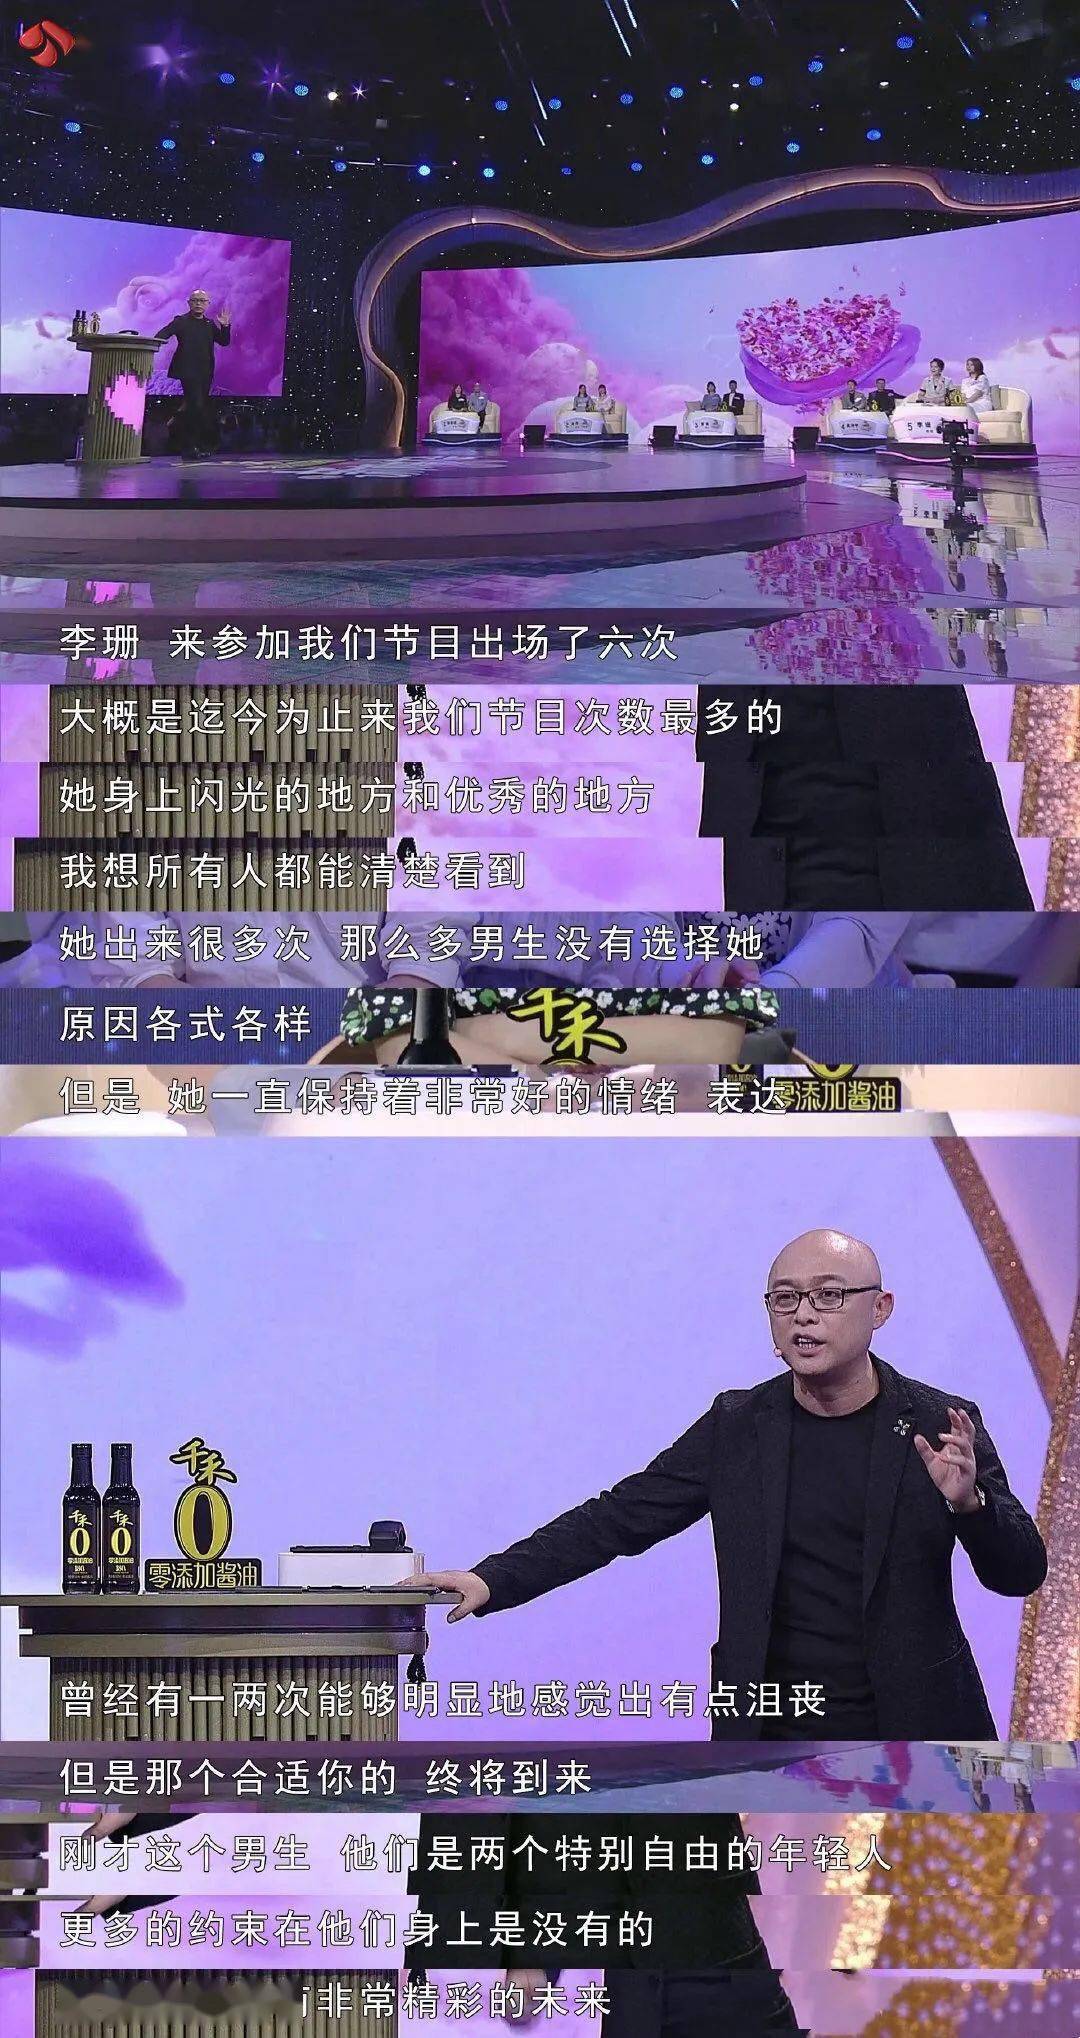 请于每周日晚21:10锁定江苏卫视《新相亲大会》.